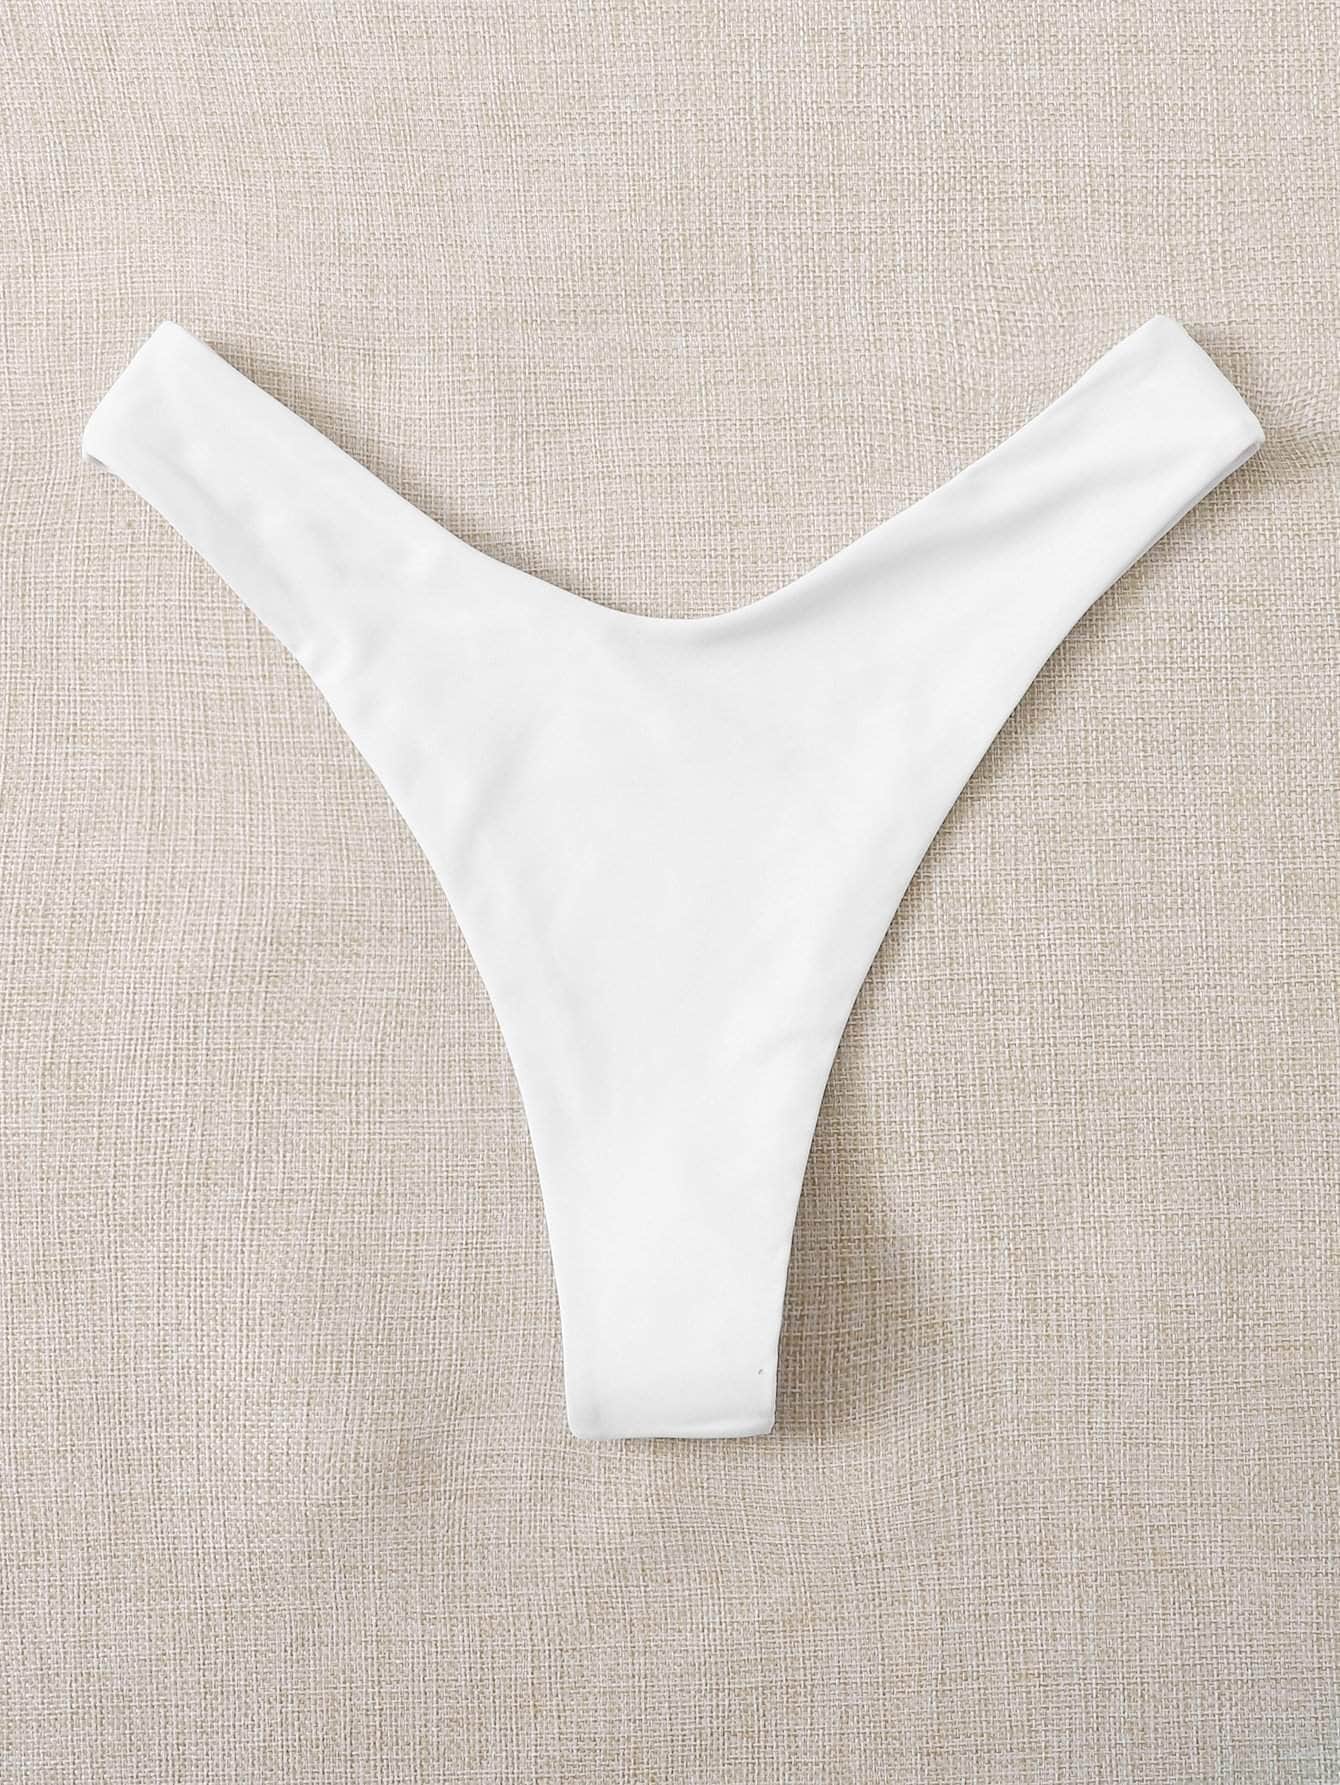 Blanco / M Tangas bikini de pierna alta